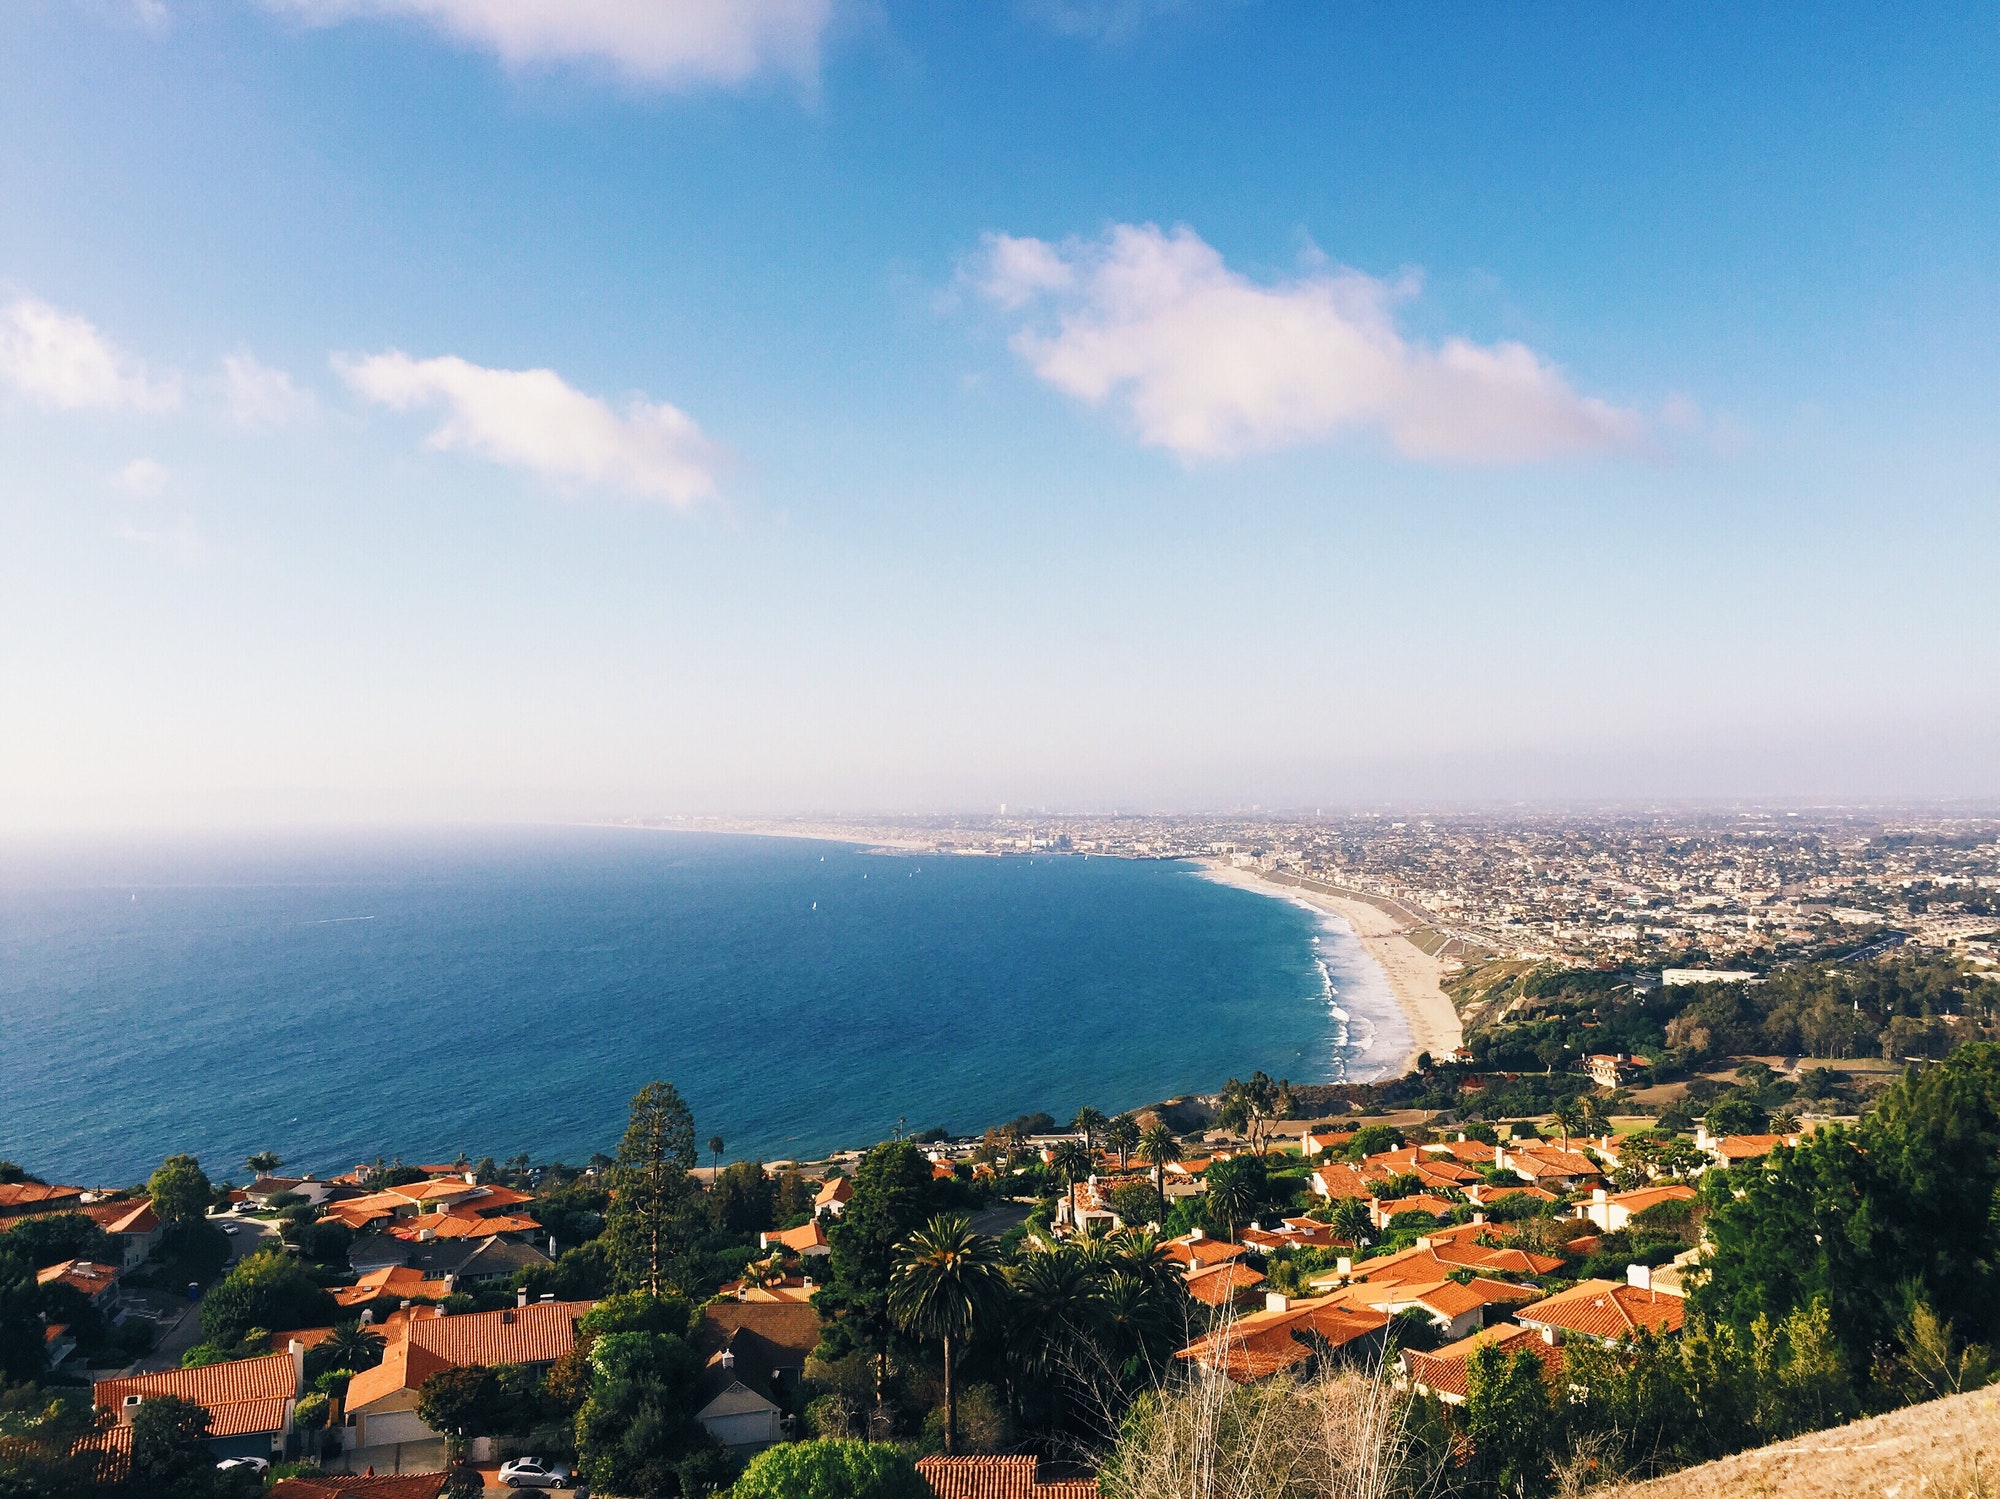 Ocean views in Los Angeles